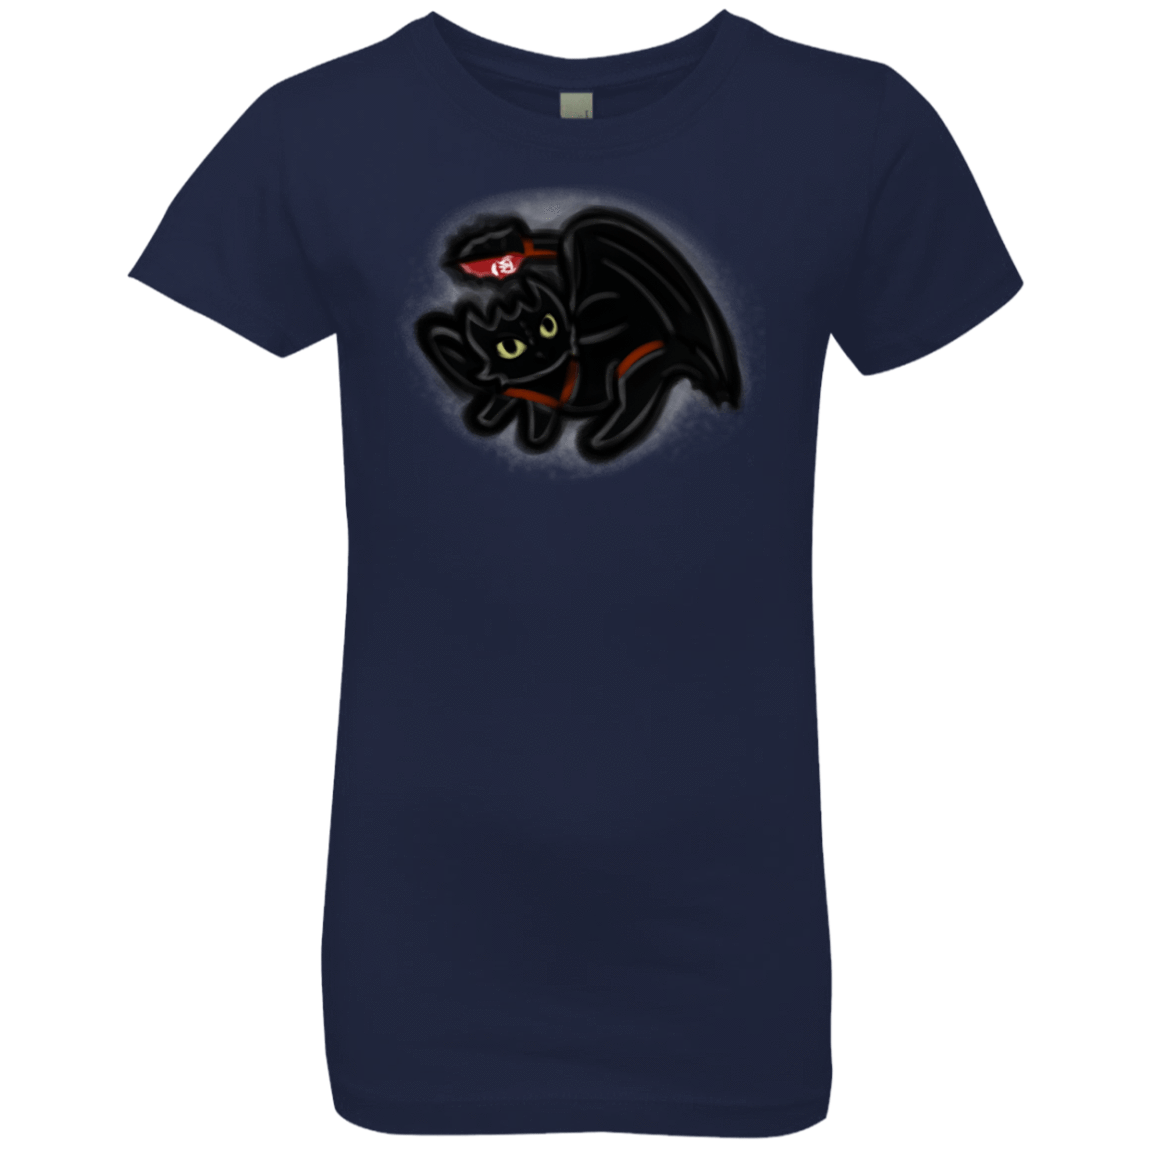 T-Shirts Midnight Navy / YXS Toothless Simba Girls Premium T-Shirt